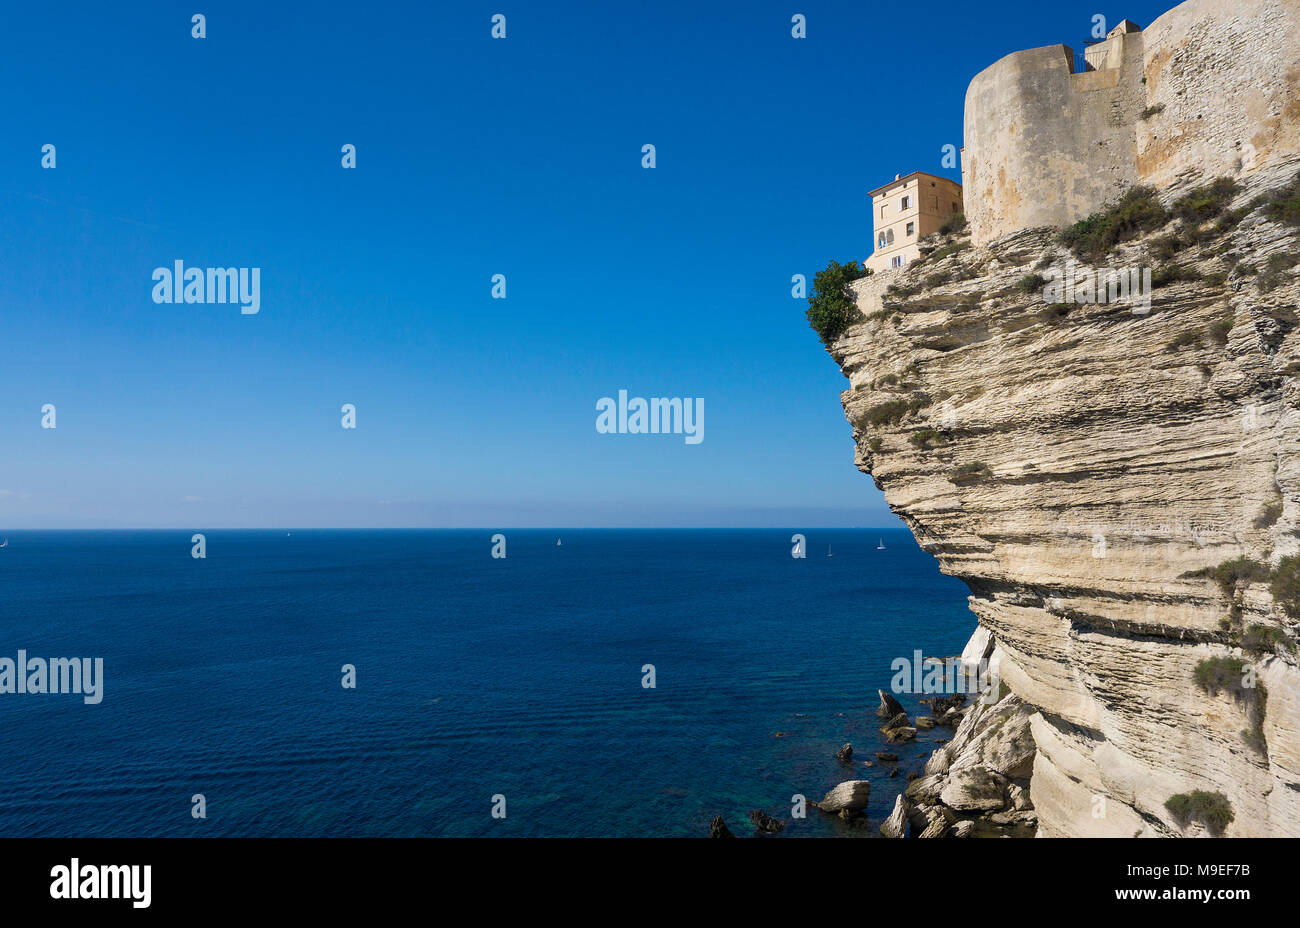 Die Zitadelle von Bonifacio, auf chalkstone Felsen gebaut, die Straße von Bonifacio, Korsika, Frankreich, Mittelmeer, Europa Stockfoto